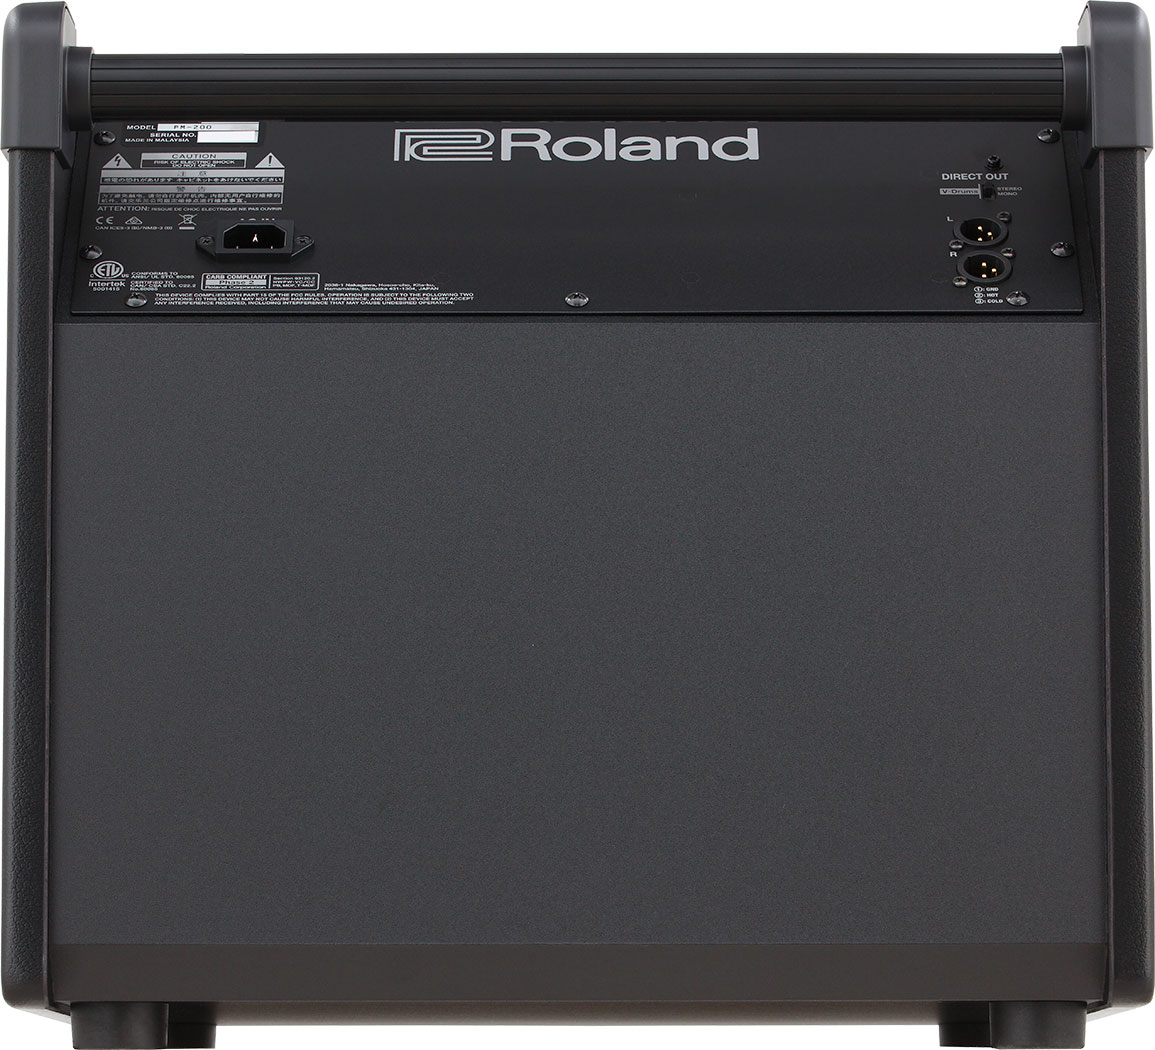 Roland Pm-200 - Sistema de amplificación para batería electrónica - Variation 2